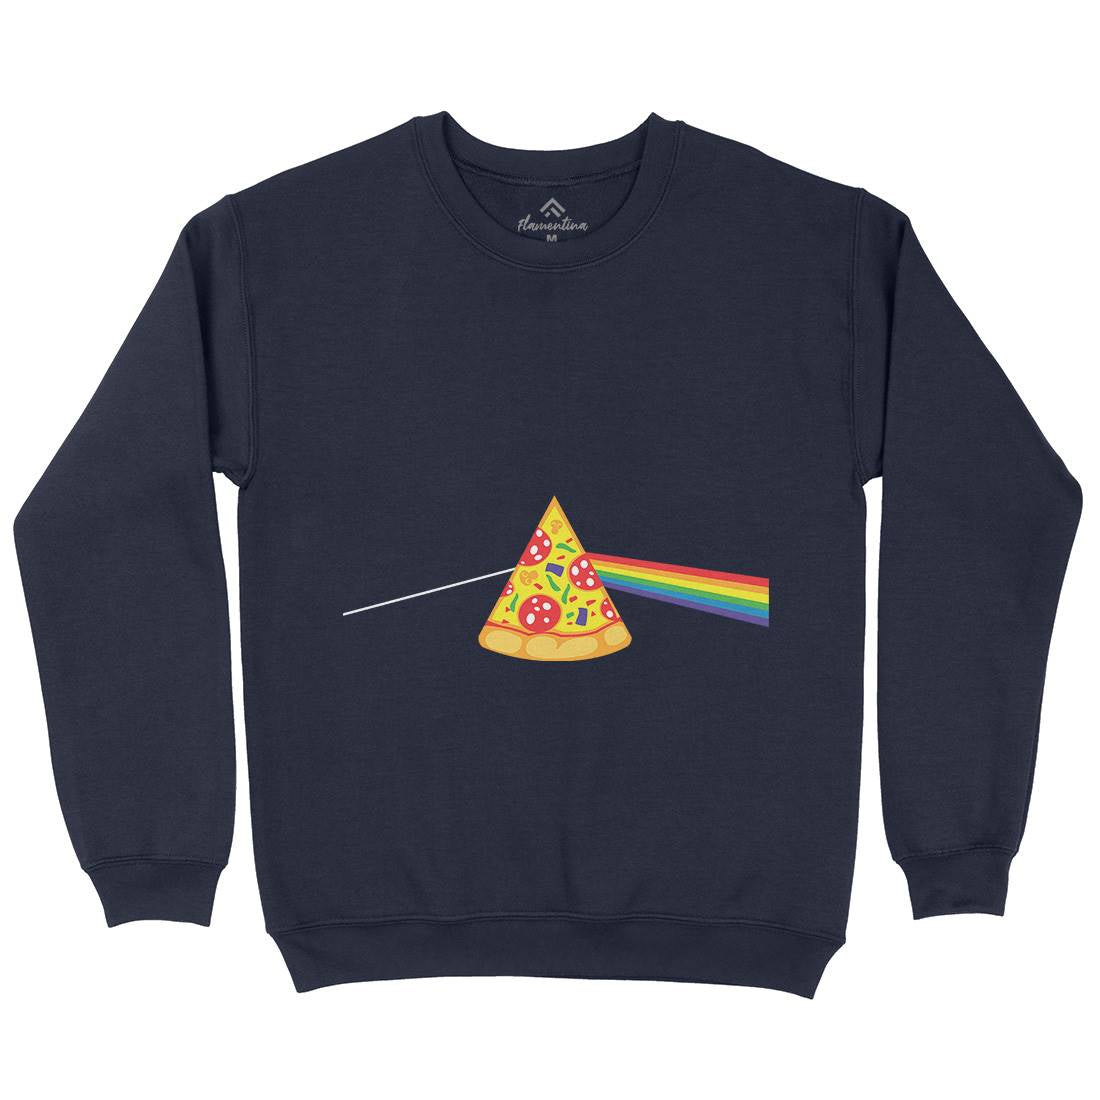 Pizza Prism Kids Crew Neck Sweatshirt Food B069